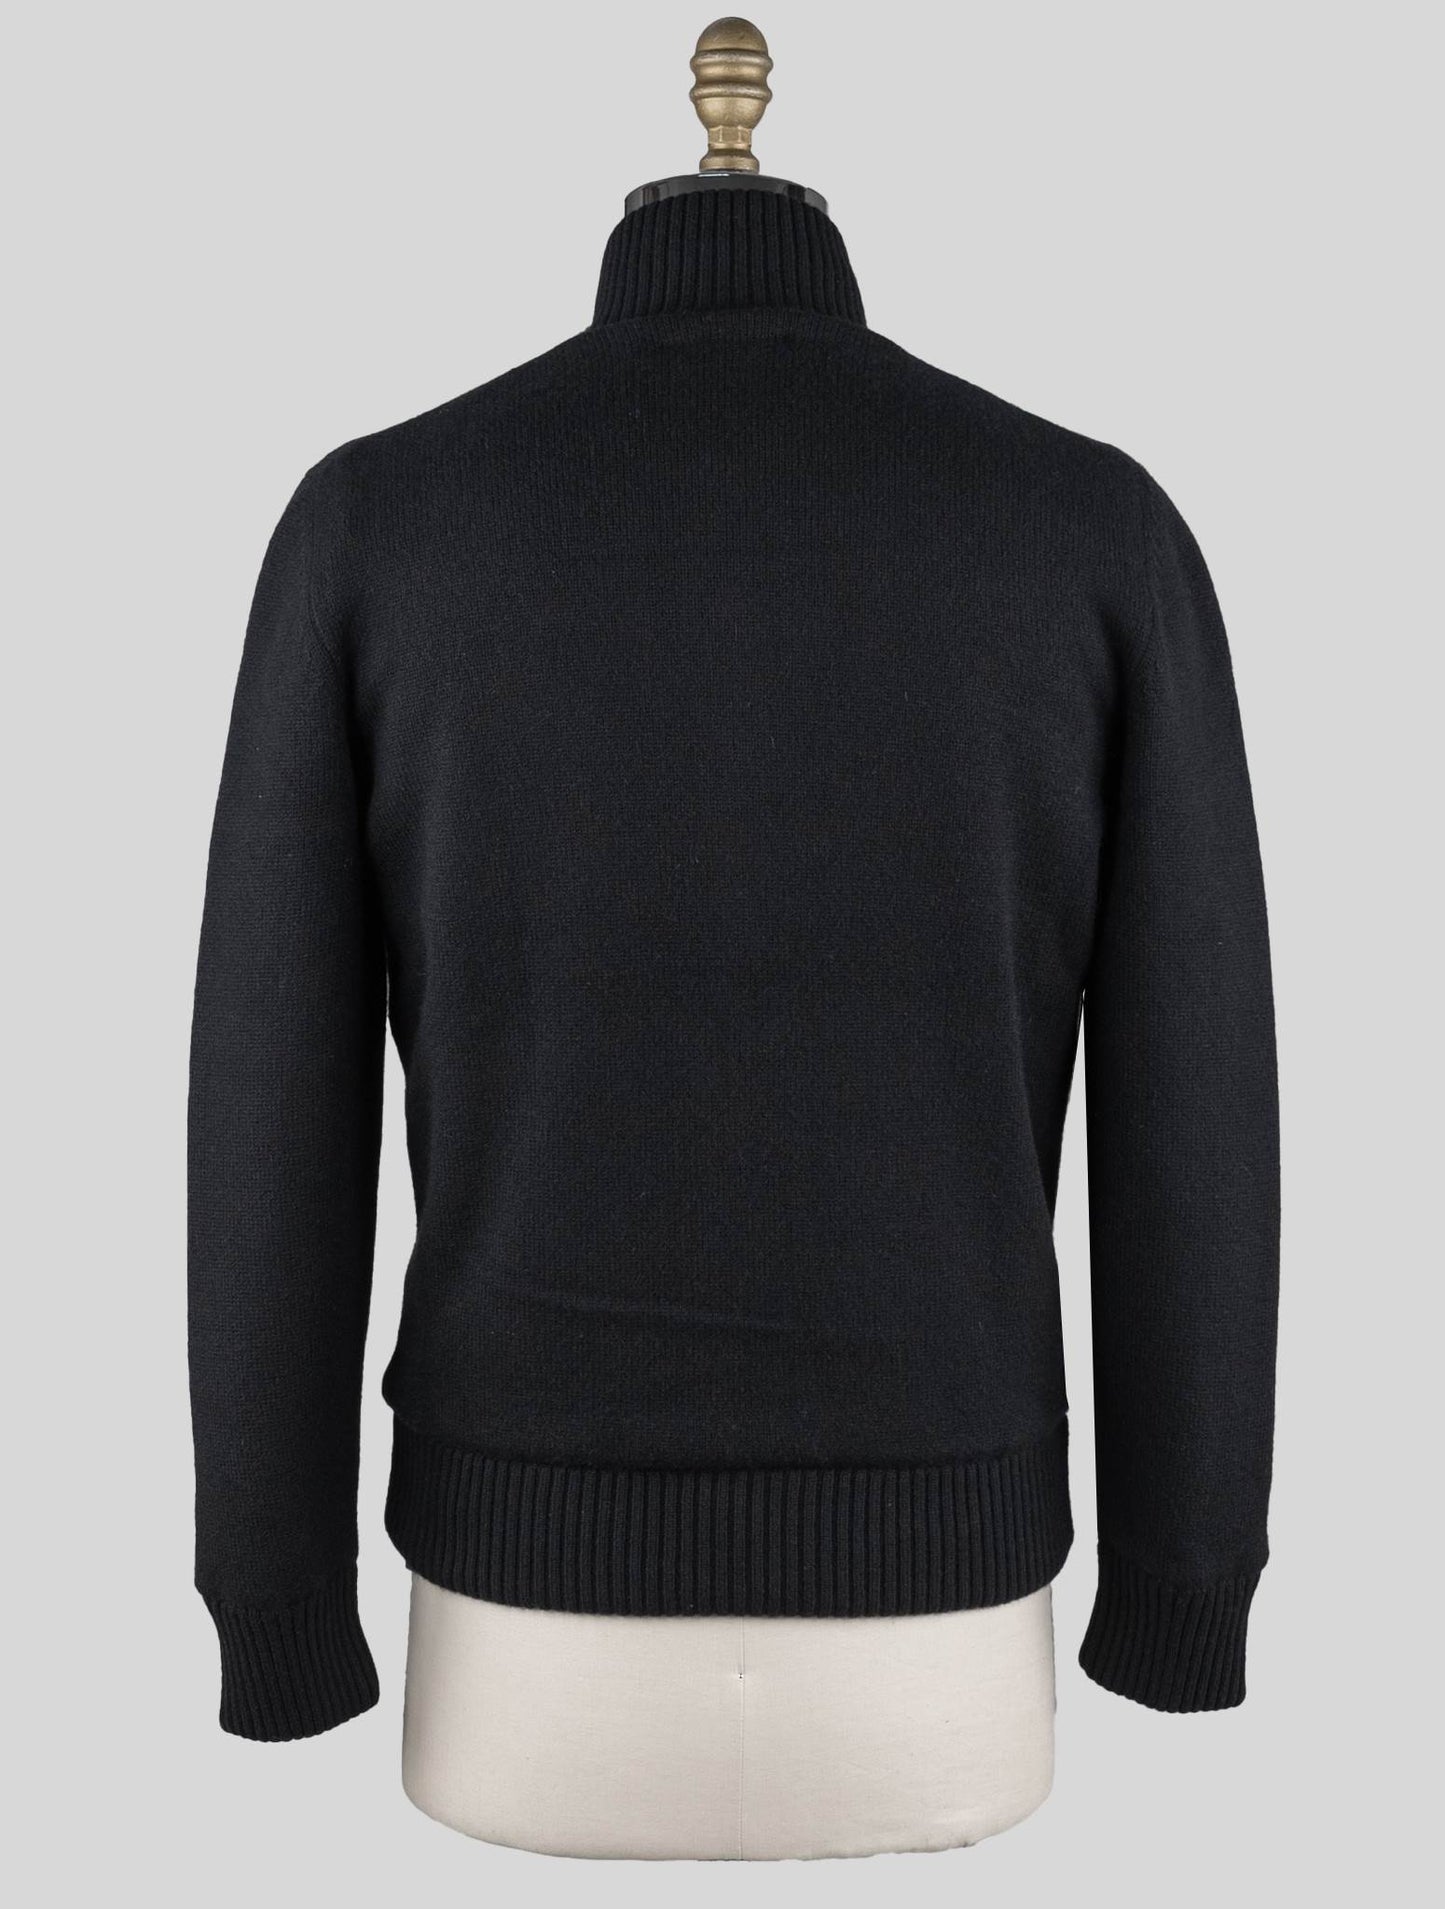 Gran Sasso sort Cashmere Faux Fur Pl Sweater Cot